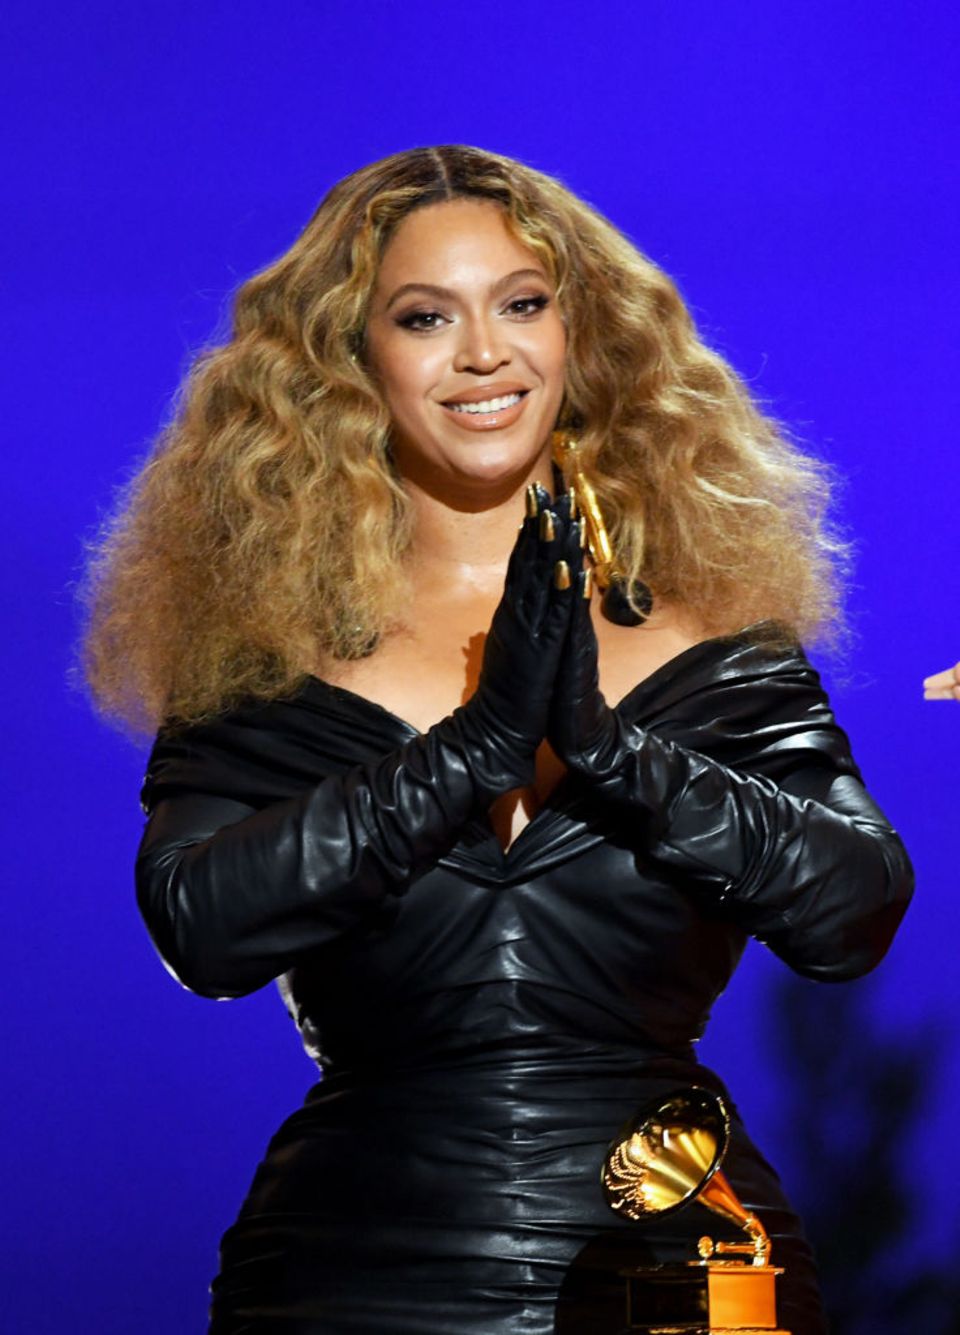 Holiday Hairstyles für die Weihnachtszeit: Beyoncé mit Mähne